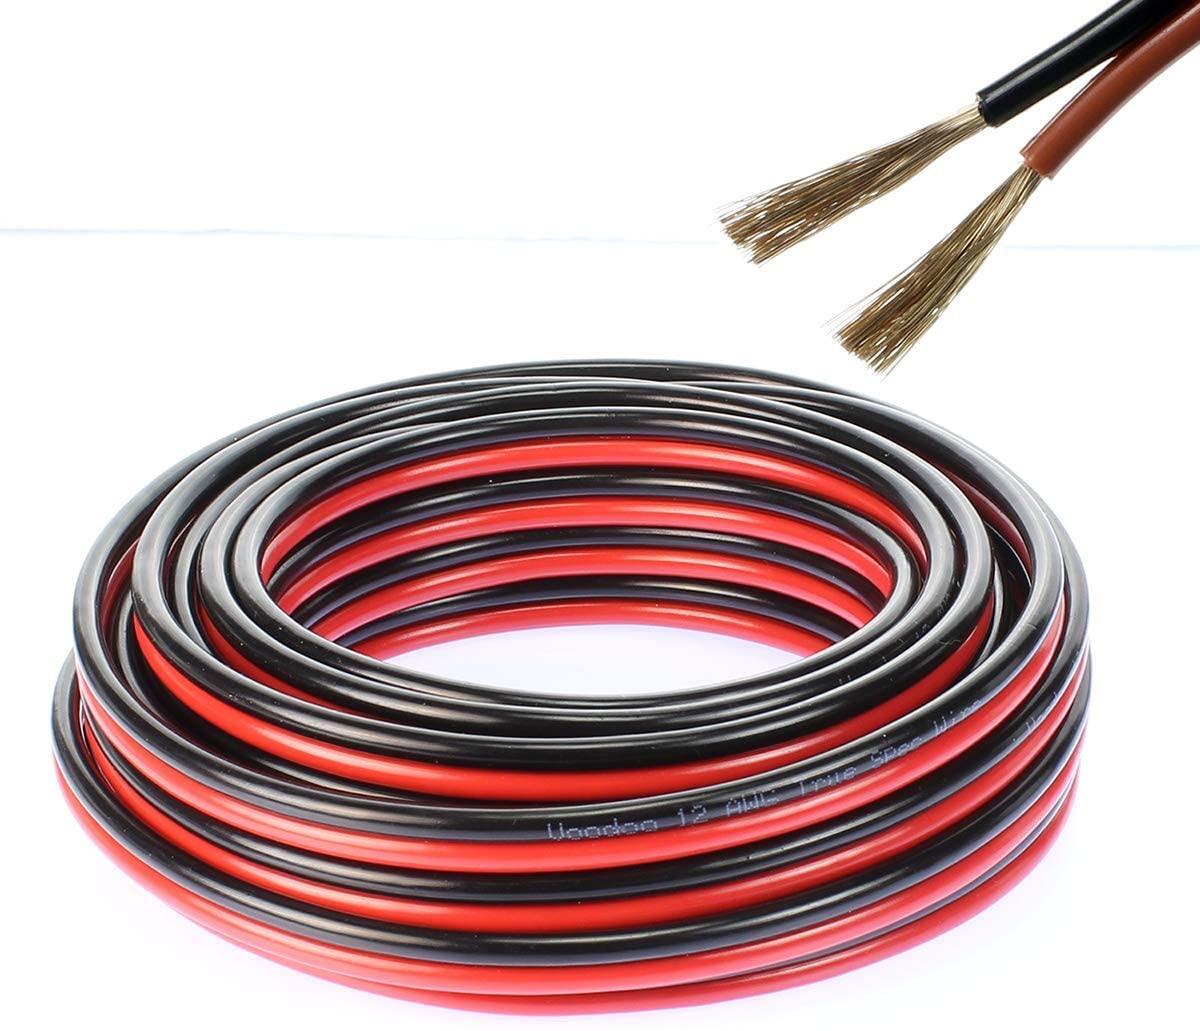 สายไฟ แดงดำ 15awg (1.5 mm²) สายลำโพง สายไฟคู่ สายคู่ electrical wire cable เครื่องเสียง รถยนต์ car a สี ชุด 30 เมตร สี ชุด 30 เมตร